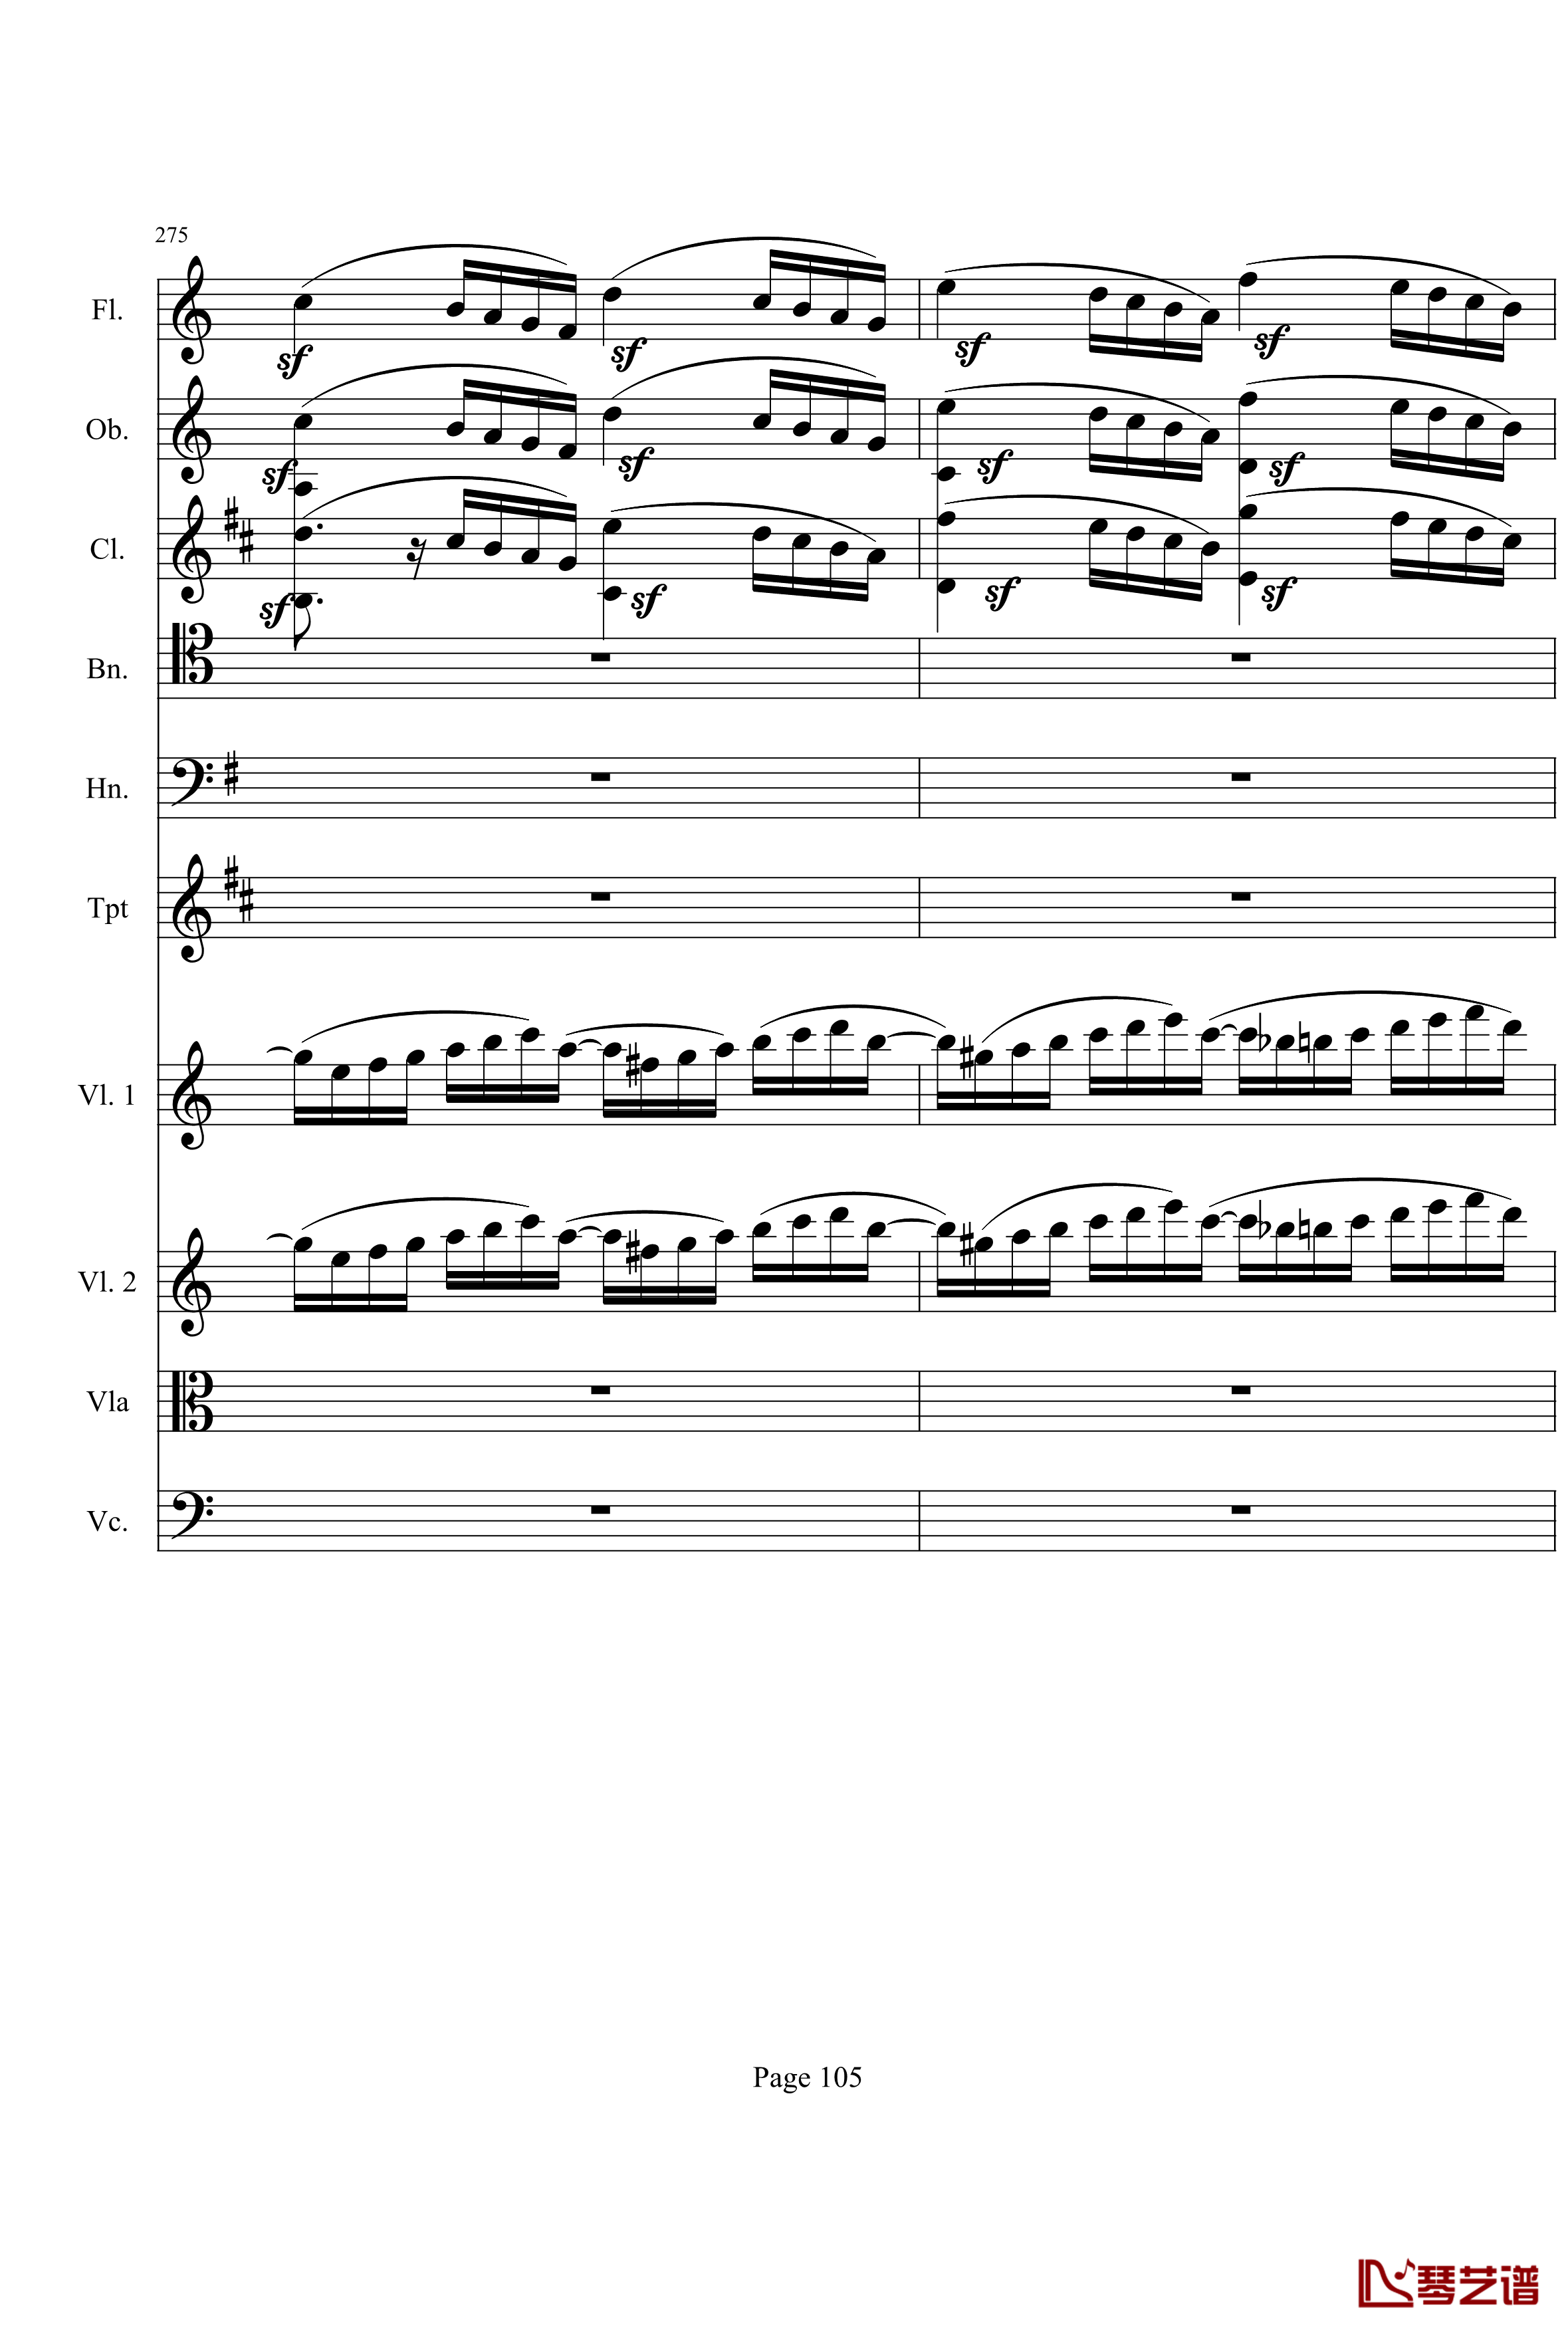 奏鸣曲之交响钢琴谱-第21首-Ⅰ-贝多芬-beethoven105